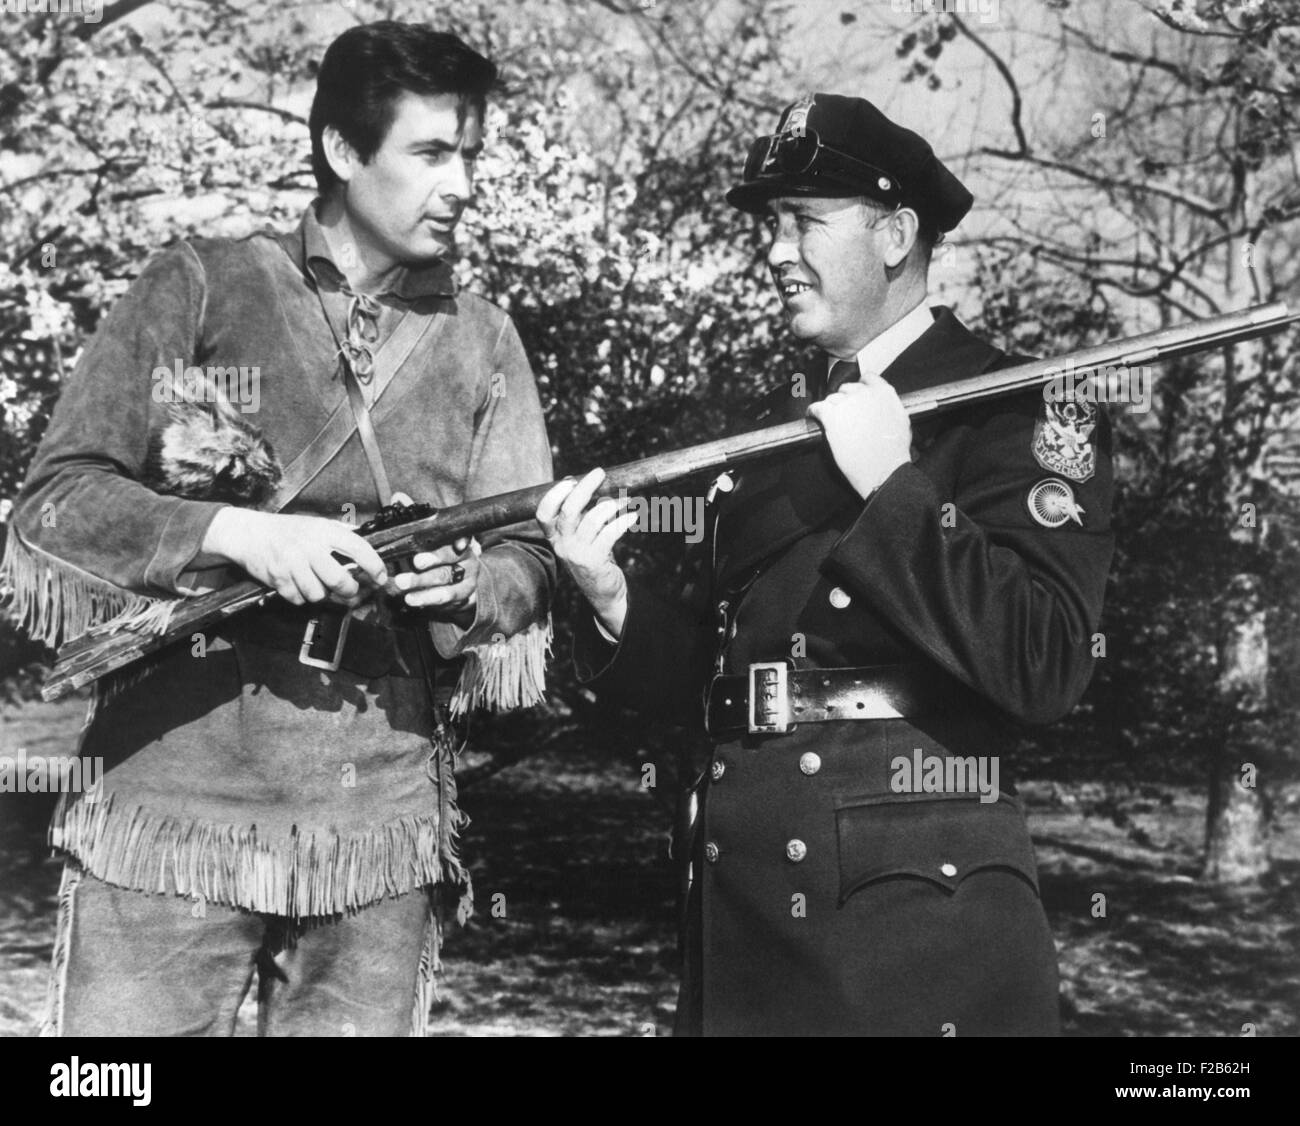 Schauspieler Fess Parker in der Frontier-Kostüm von Davy Crocket mit einem weißen Haus Polizisten. Parker spielte in dem Disney-Film und TV-Serien, "Davy Crockett, König der wilden Grenze". Ca. April 1955. -(BSLOC 2014 16 163) Stockfoto